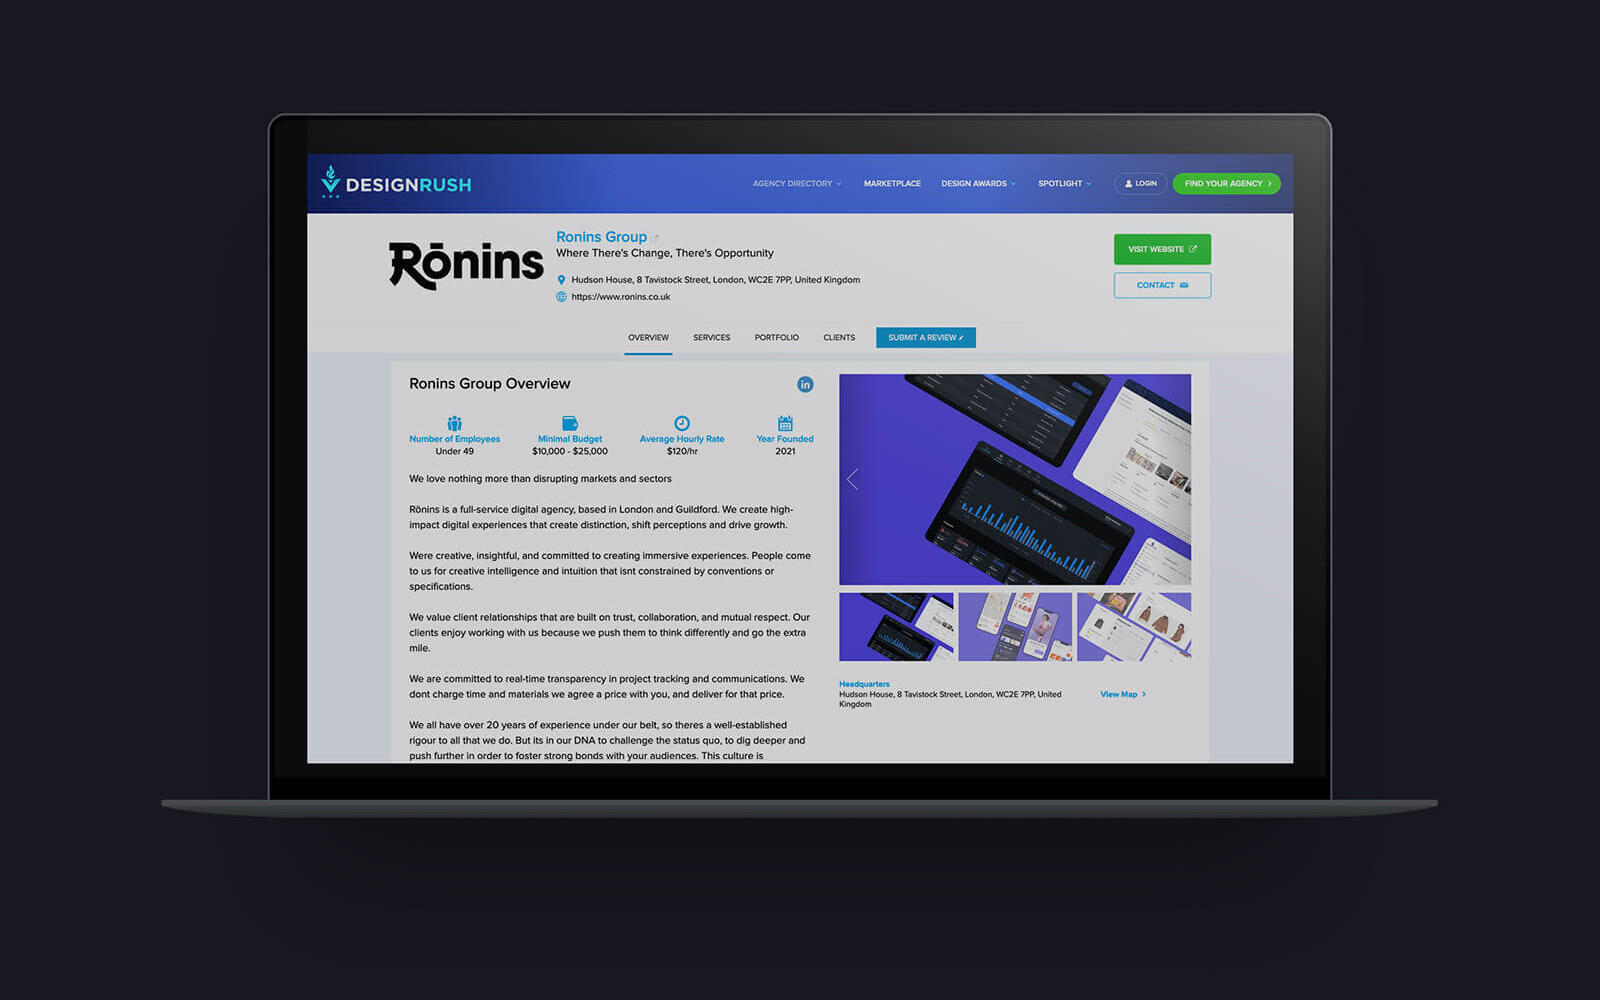 DesignRush website featuring Ronins